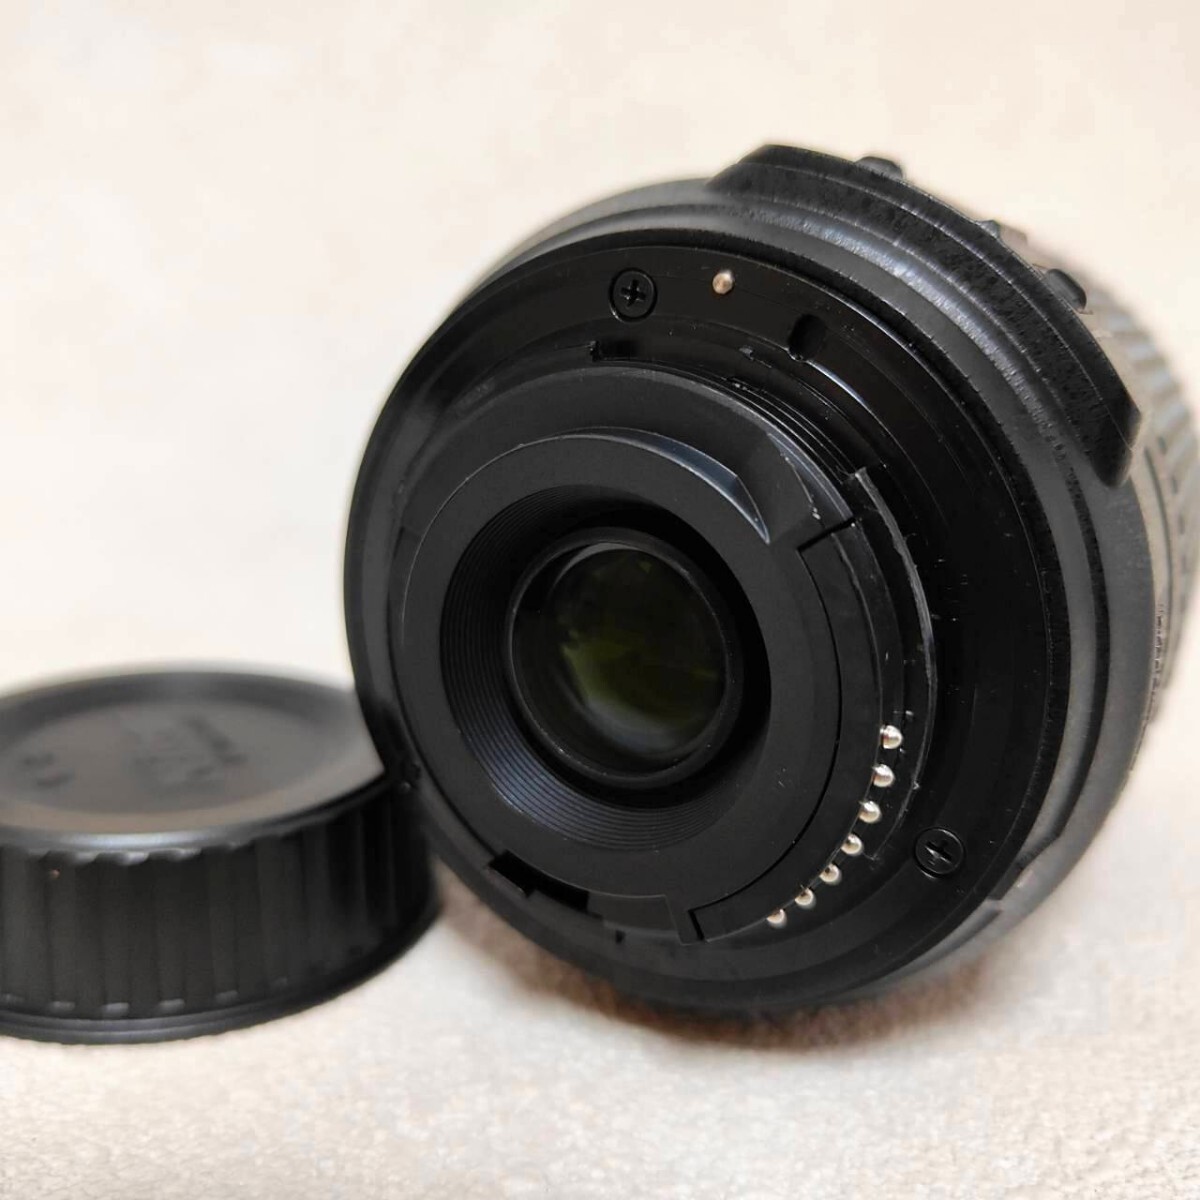 Nikon DX AF-S NIKKOR 55-200mm 1:4-5.6 G ED / TAMRON 18-270mm F/3.5-6.3 Di Ⅱ カメラレンズ 2個セットの画像3